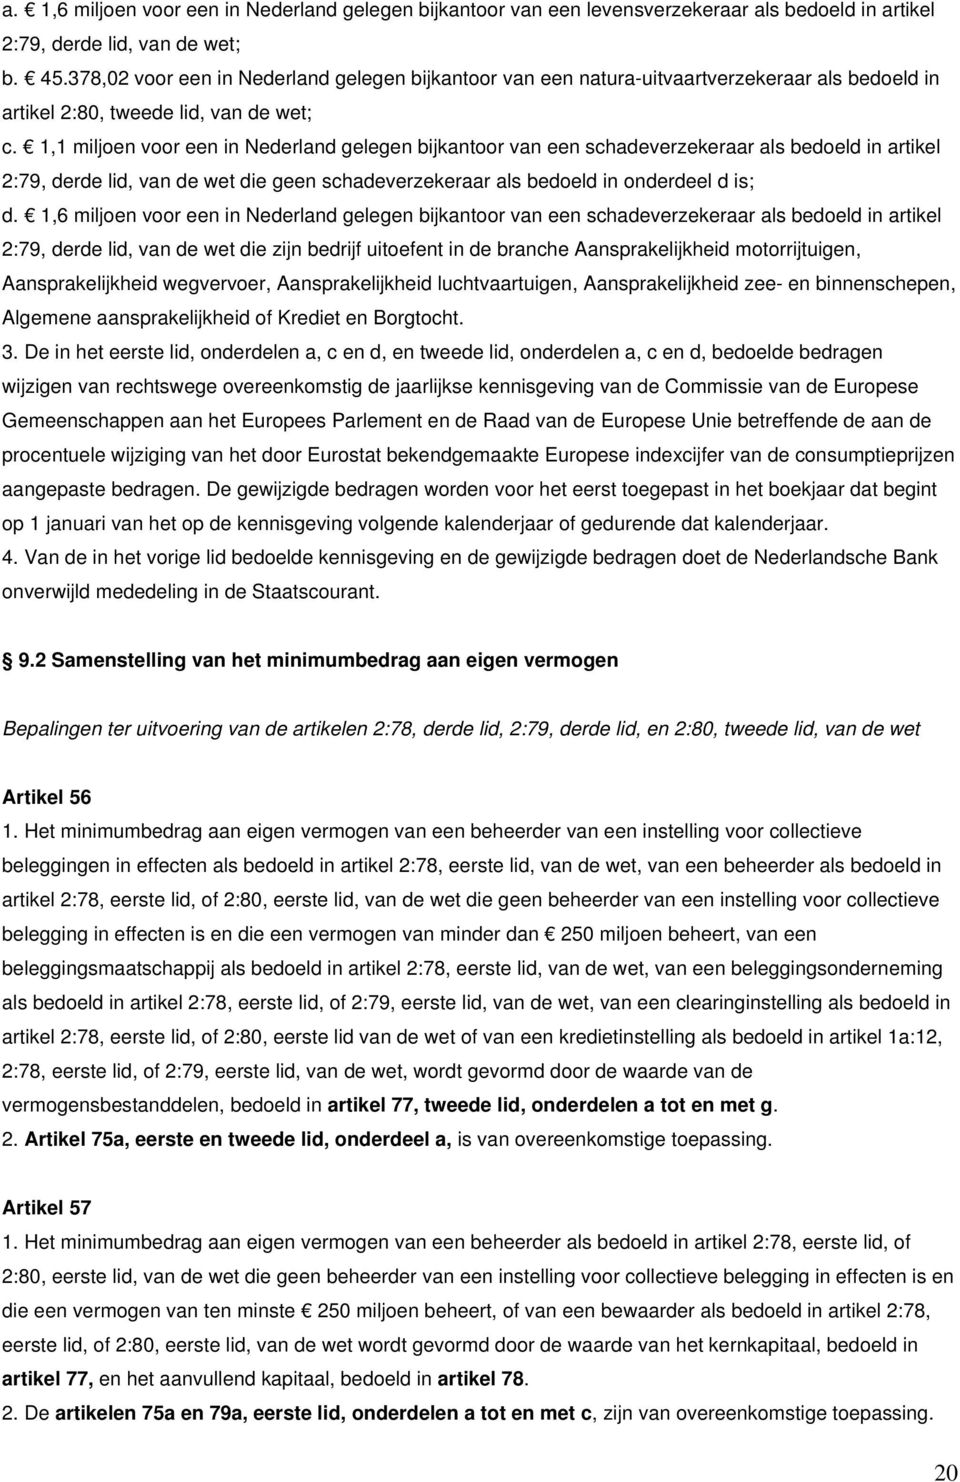 1,1 miljoen voor een in Nederland gelegen bijkantoor van een schadeverzekeraar als bedoeld in artikel 2:79, derde lid, van de wet die geen schadeverzekeraar als bedoeld in onderdeel d is; d.